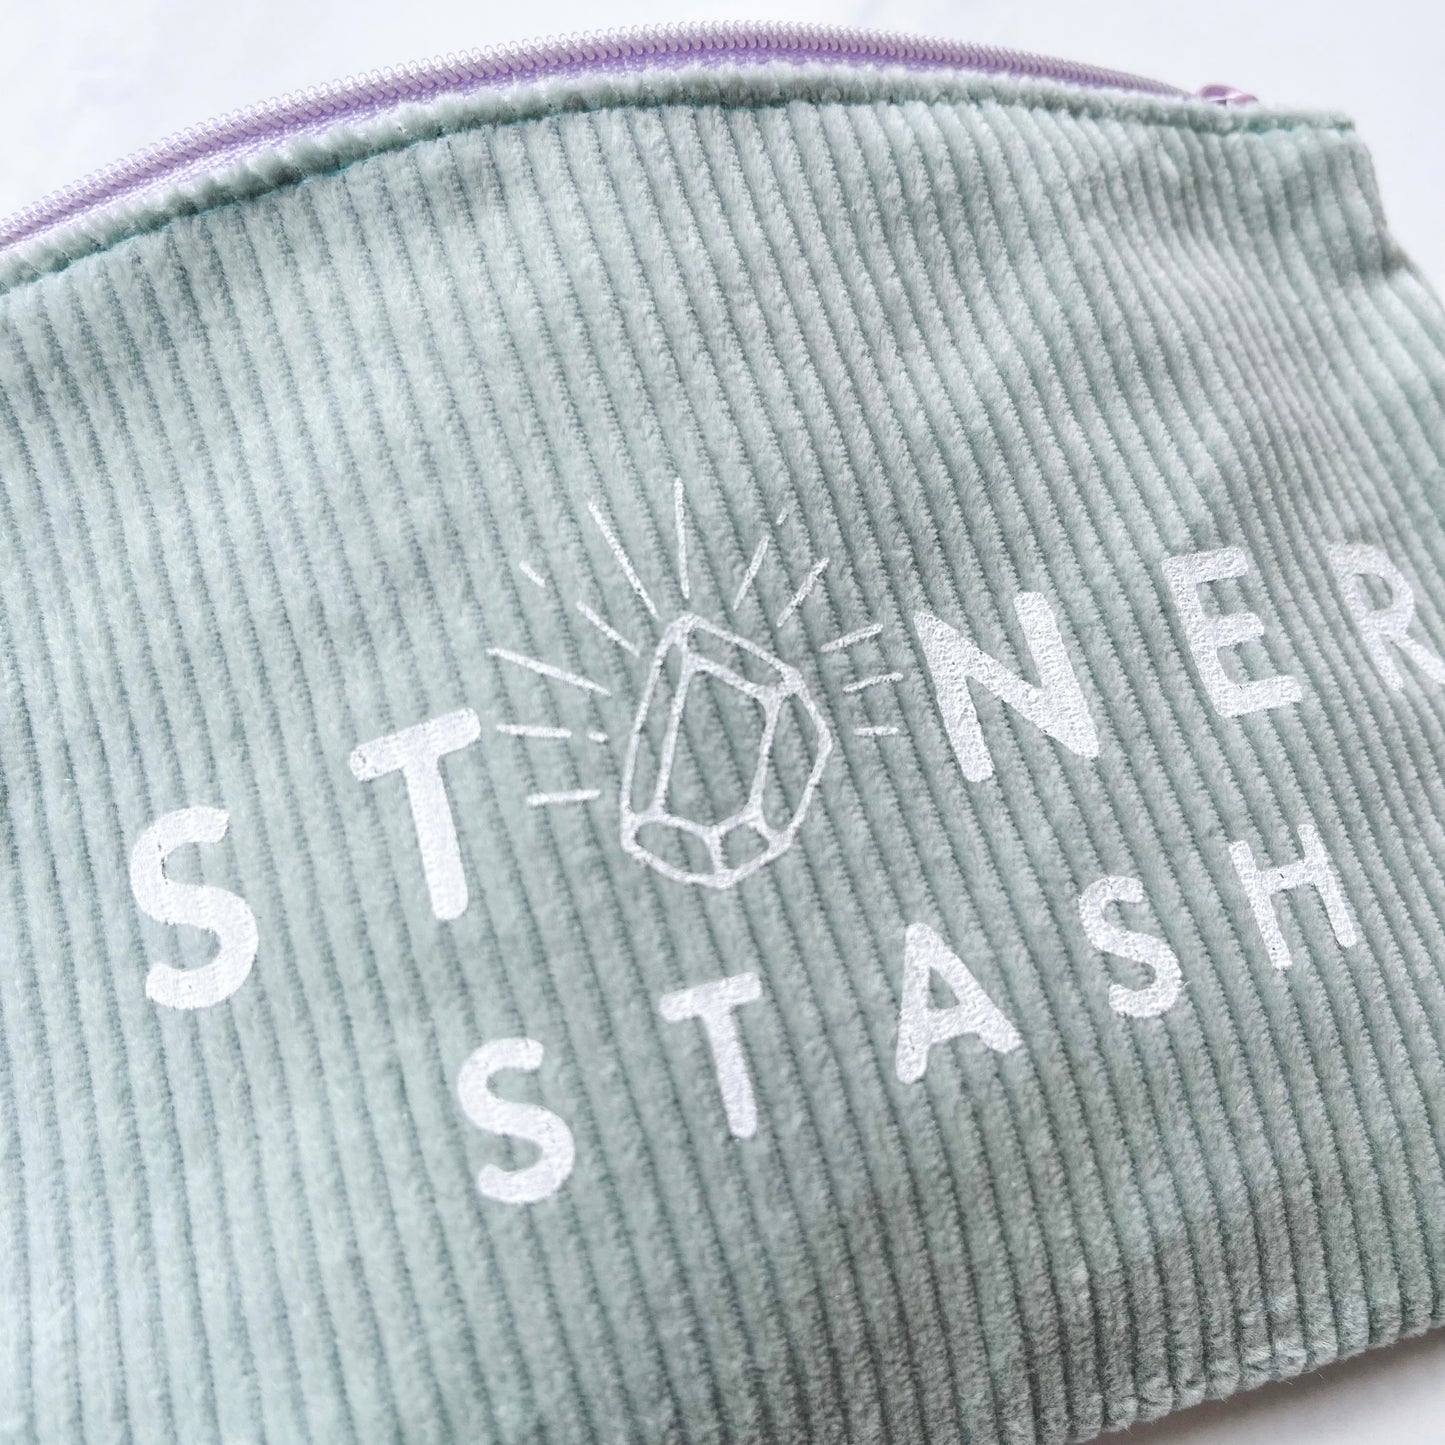 The Stoner Stash Bag